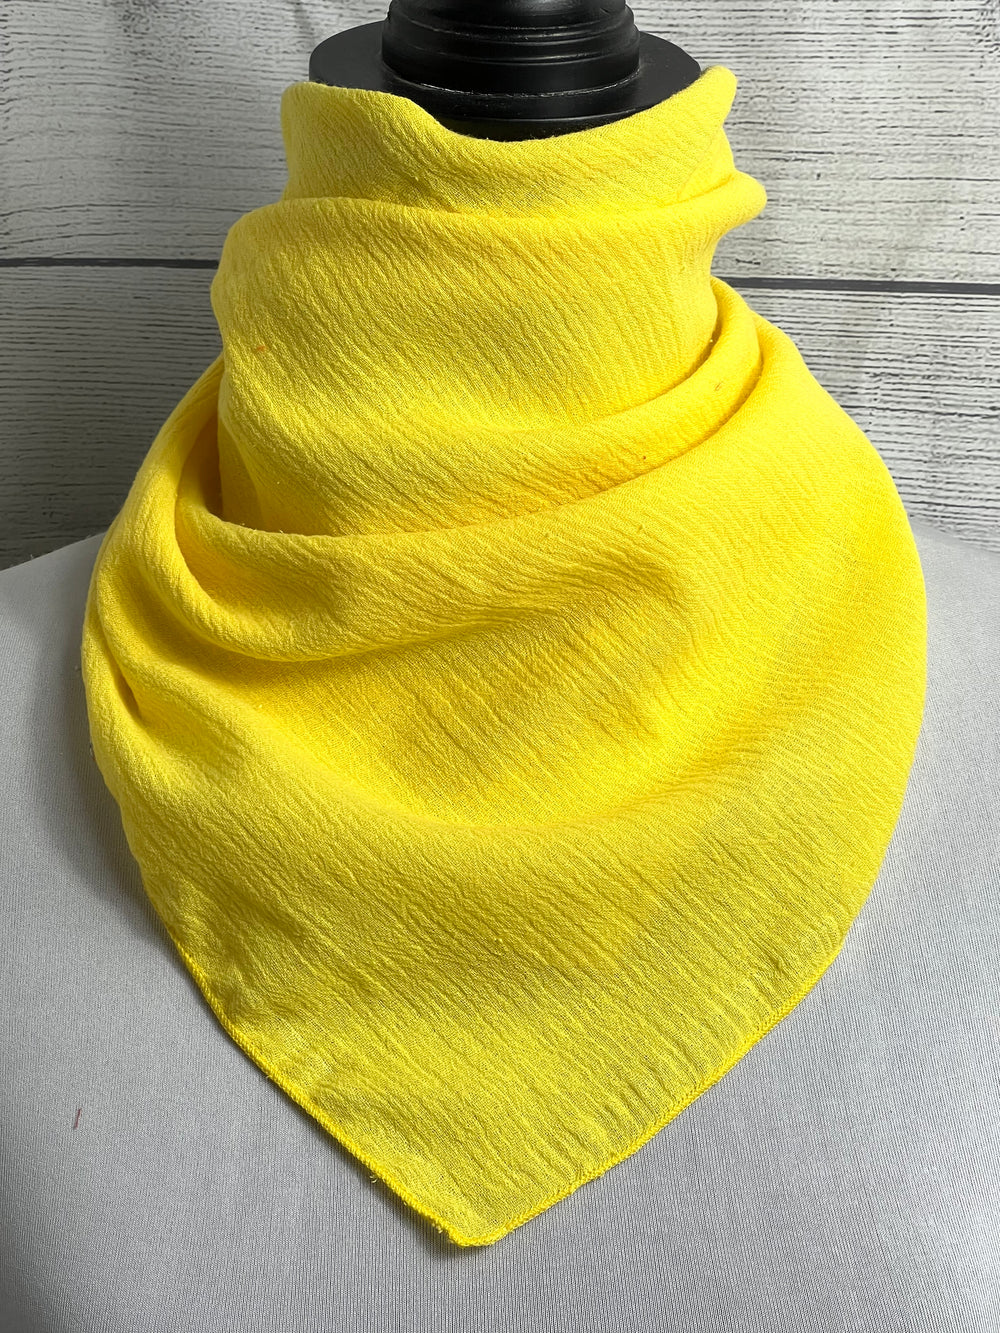 Solid Yellow Cotton Gauze Bandana